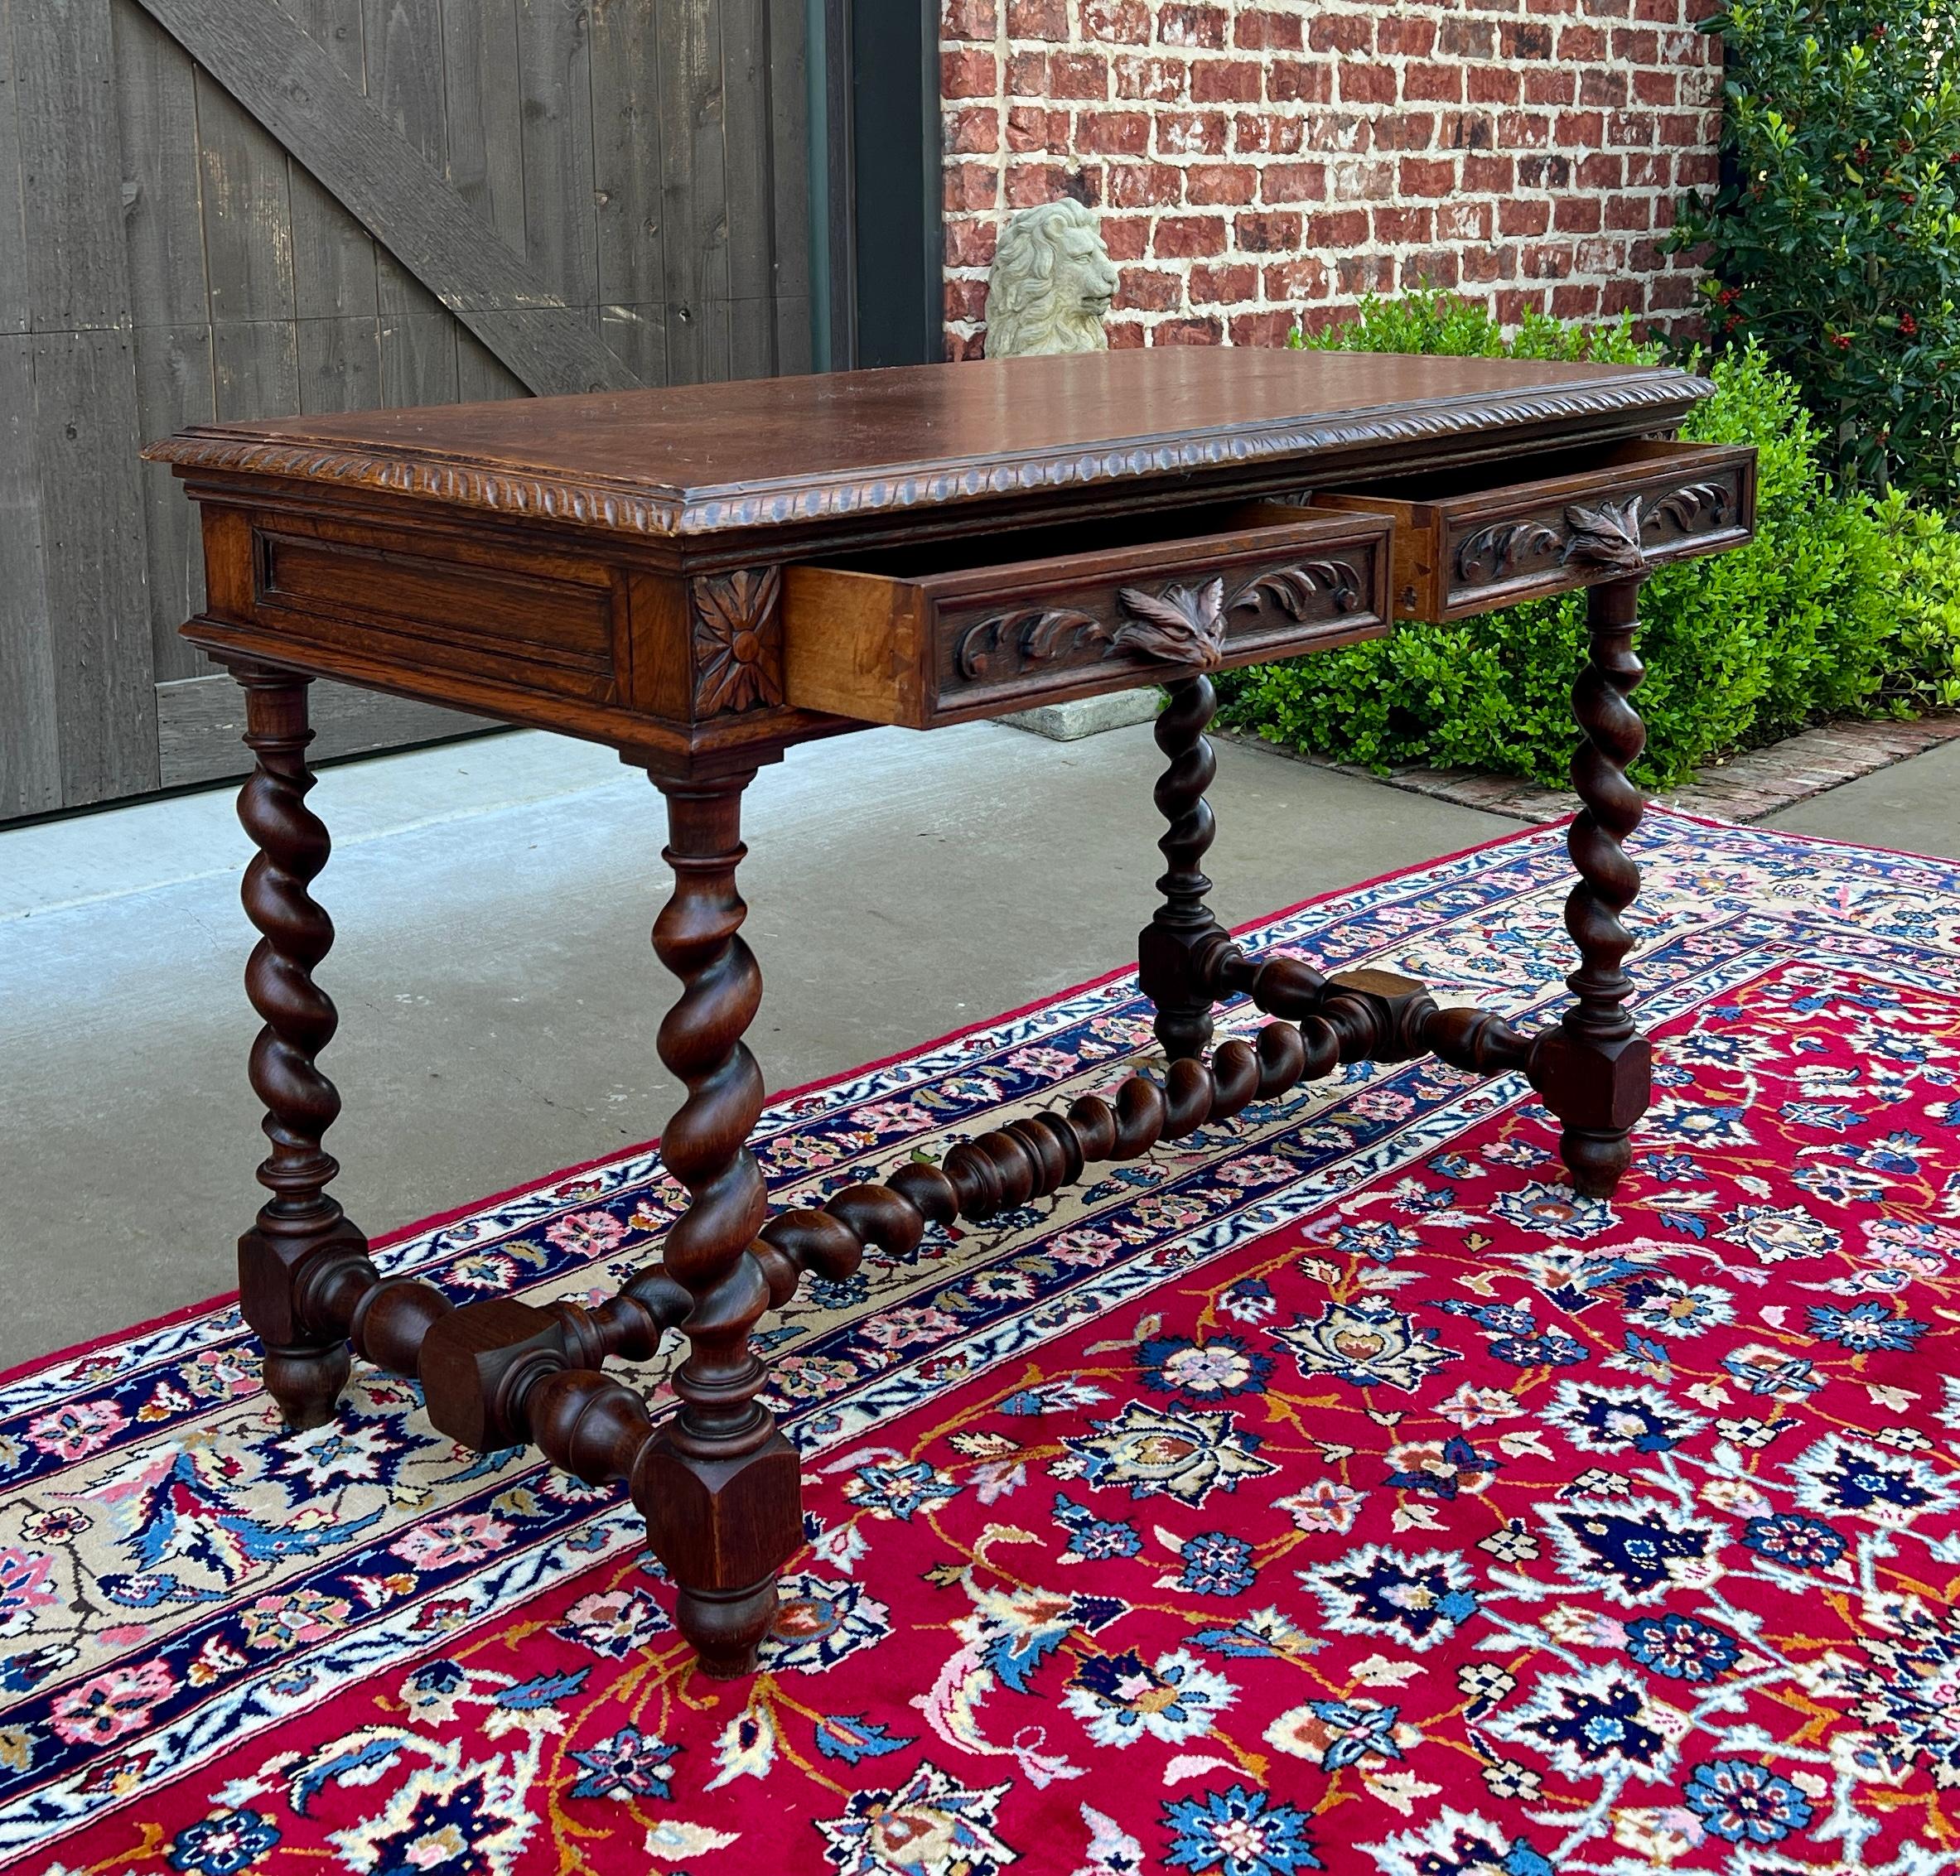 Antique French Desk Table Renaissance Revival Barley Twist Carved Tiger Oak 19C For Sale 6